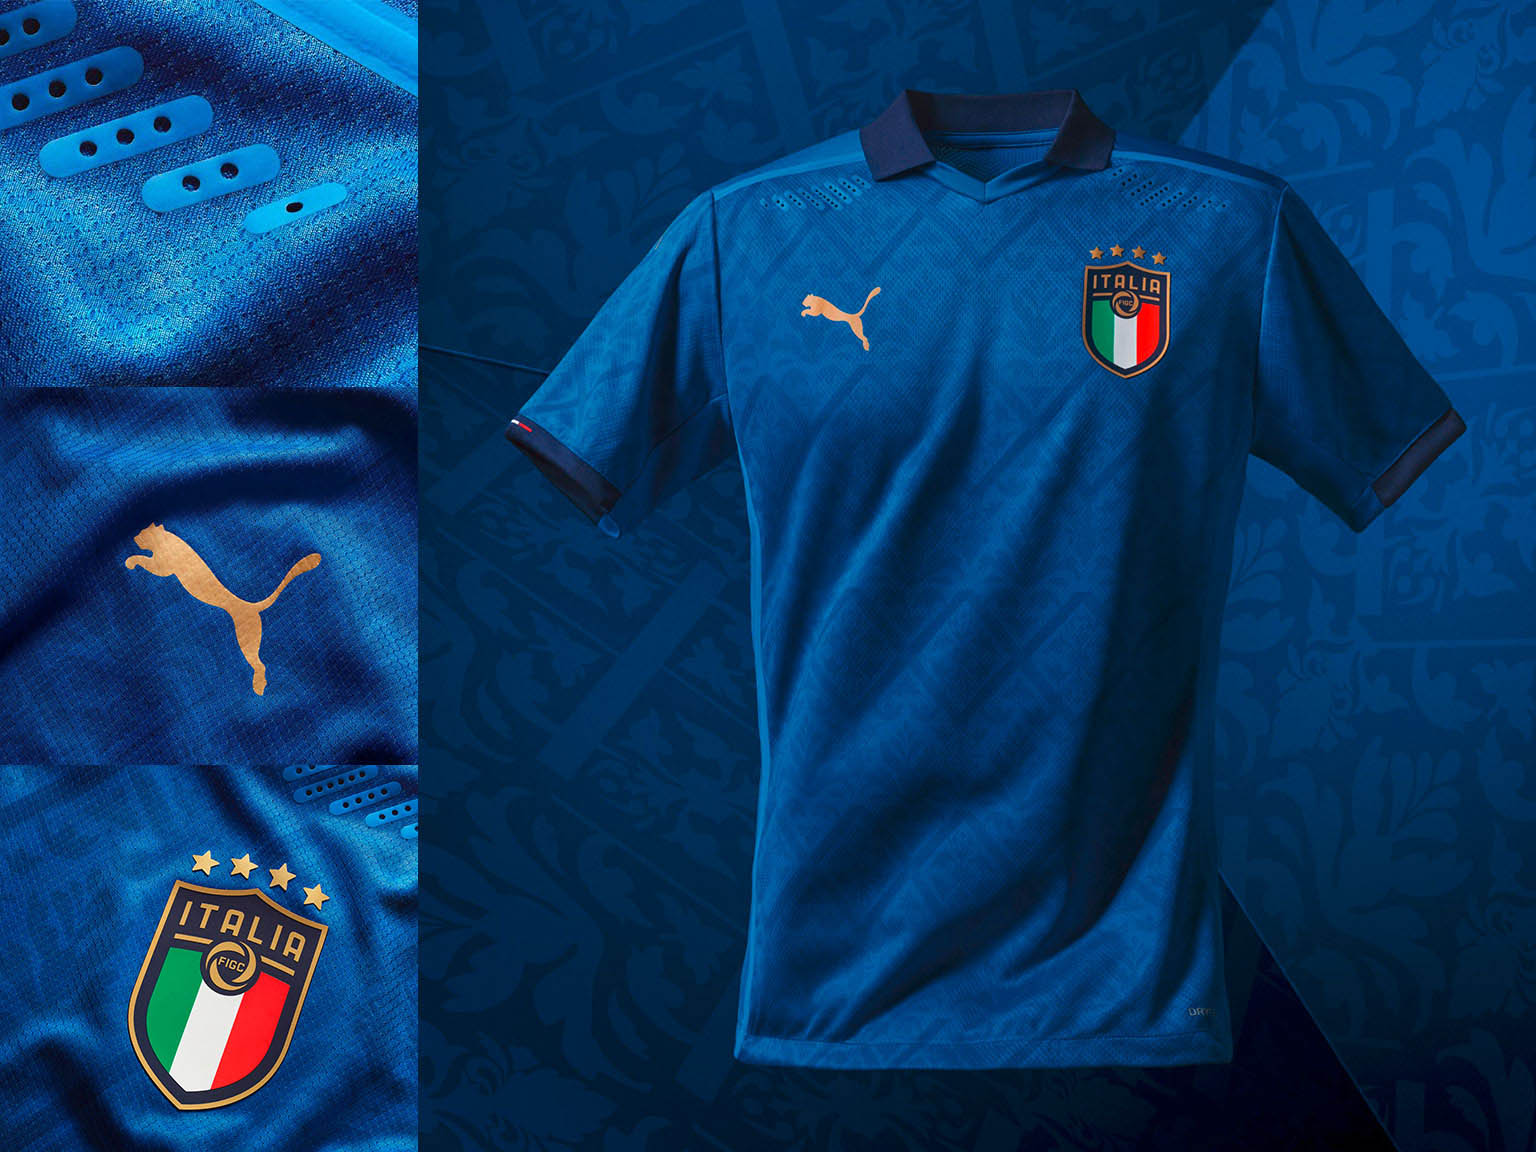 camisas de seleções europeias Itália